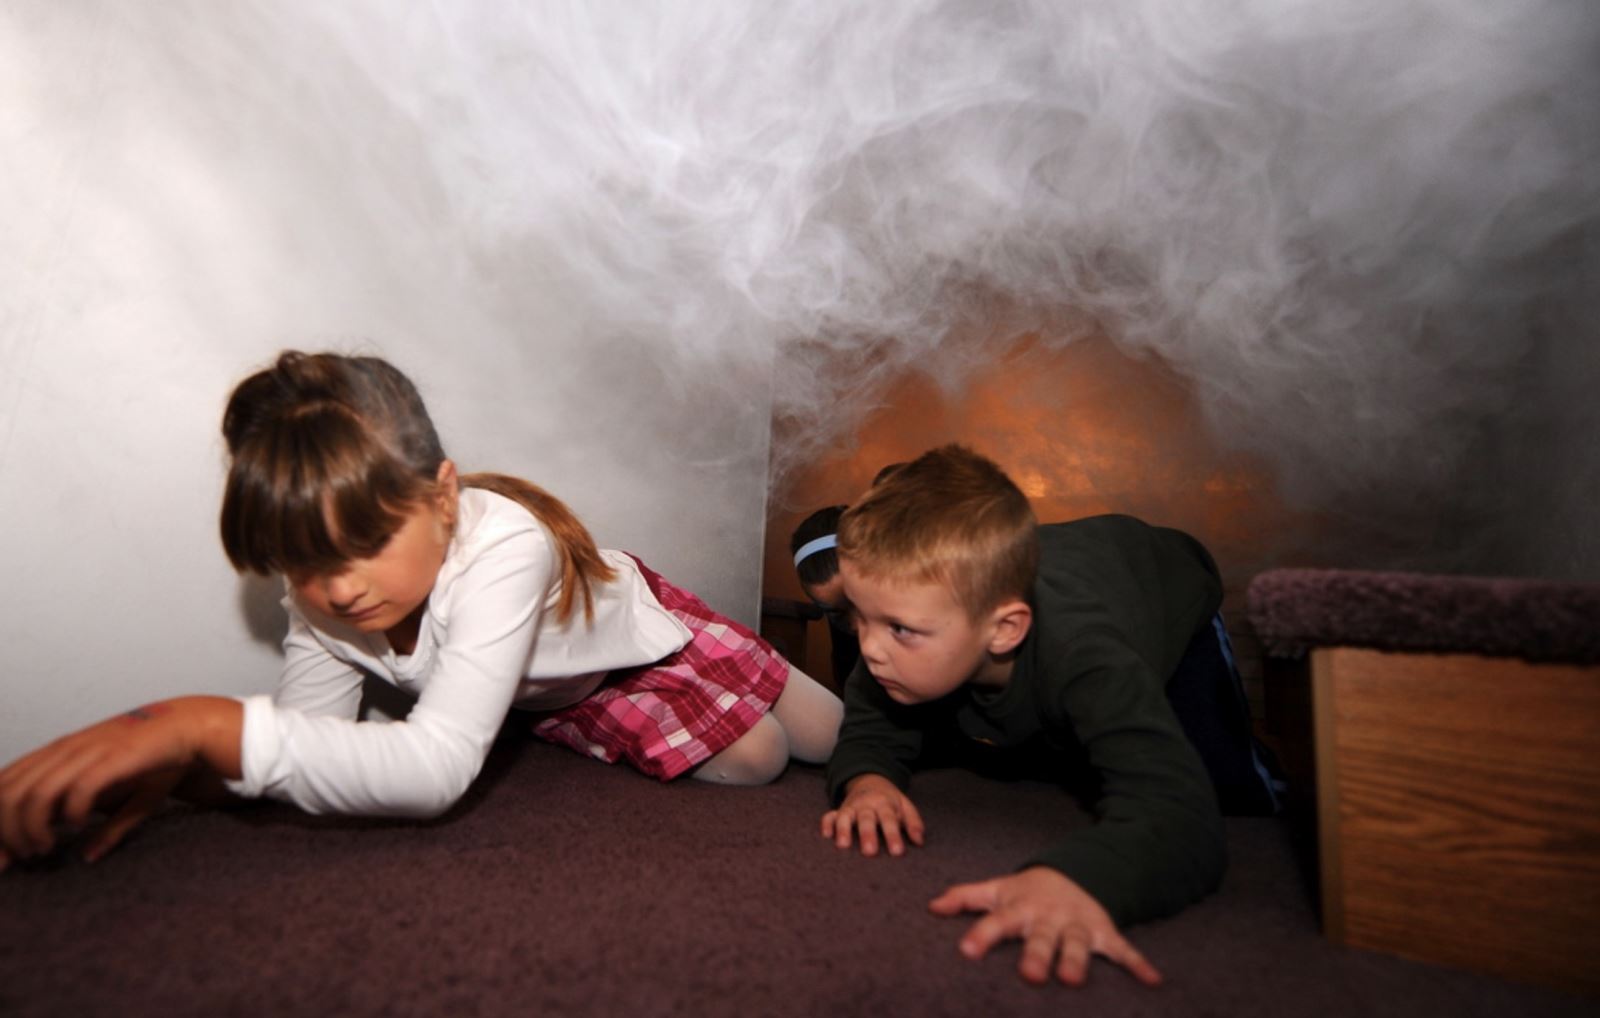 Cúi thấp người xuống sàn nhà để tránh khói độc